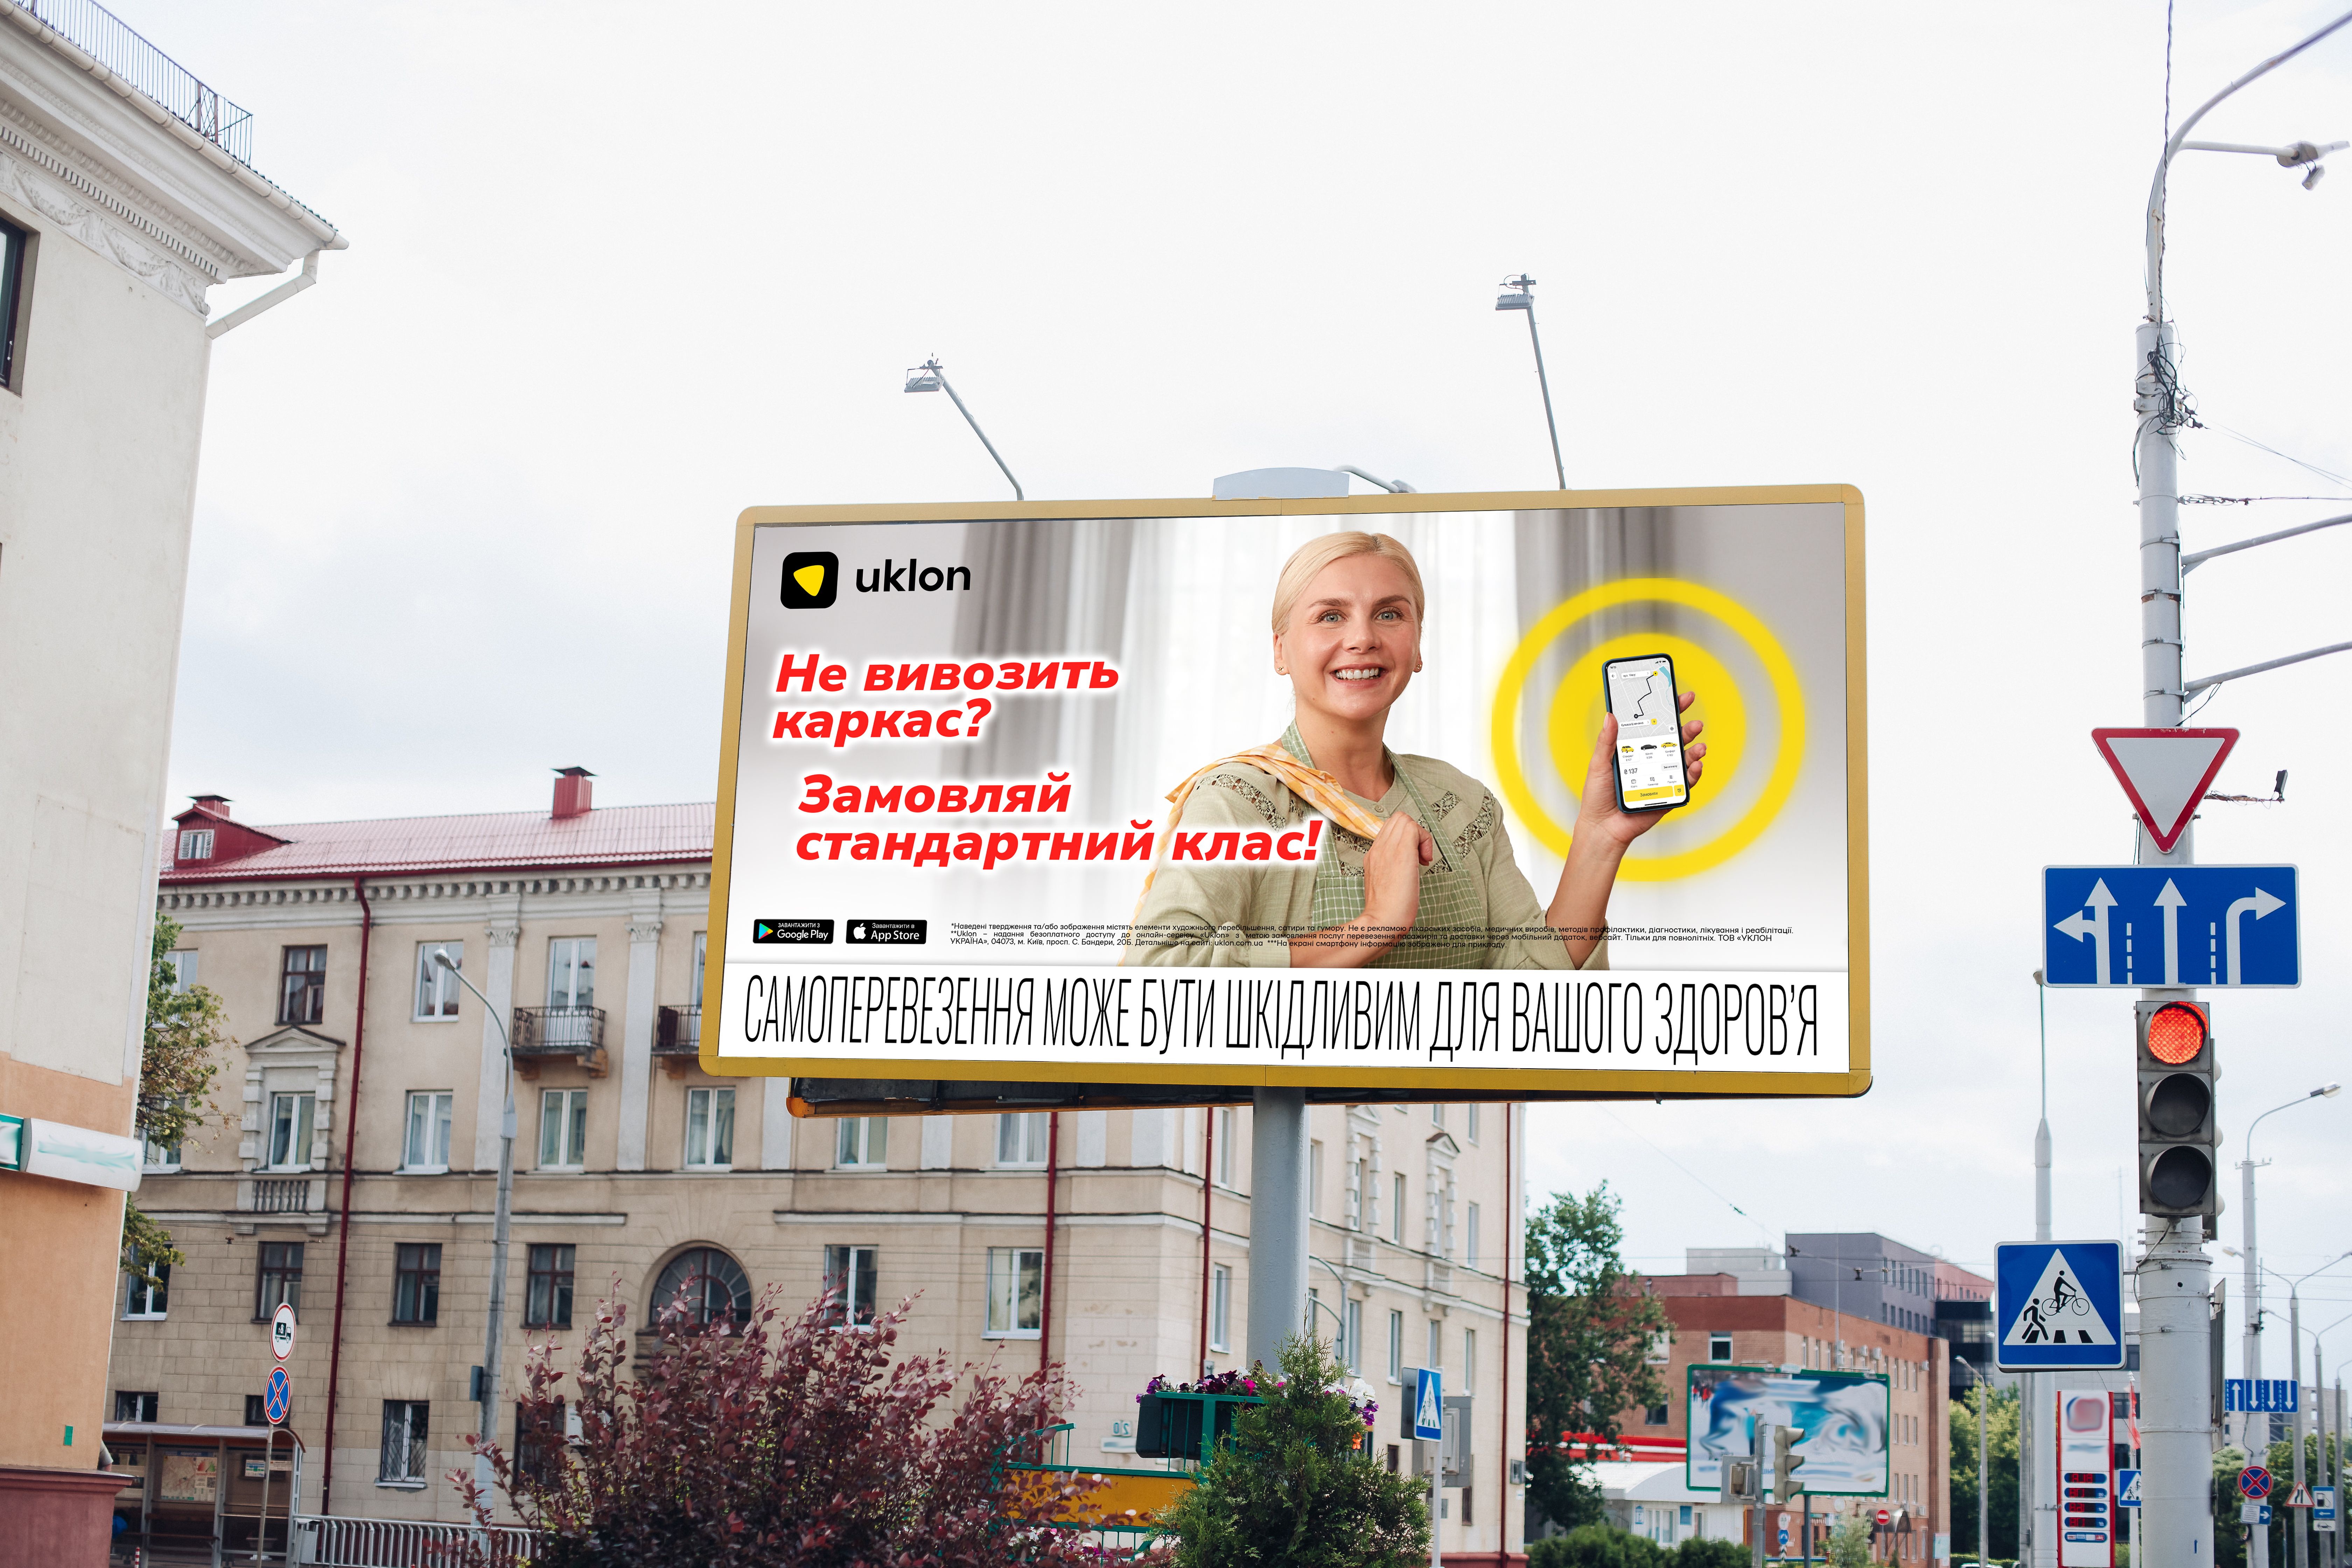 Uklon представил крупную продуктовую кампанию, переносящую зрителей в мир украинской рекламы